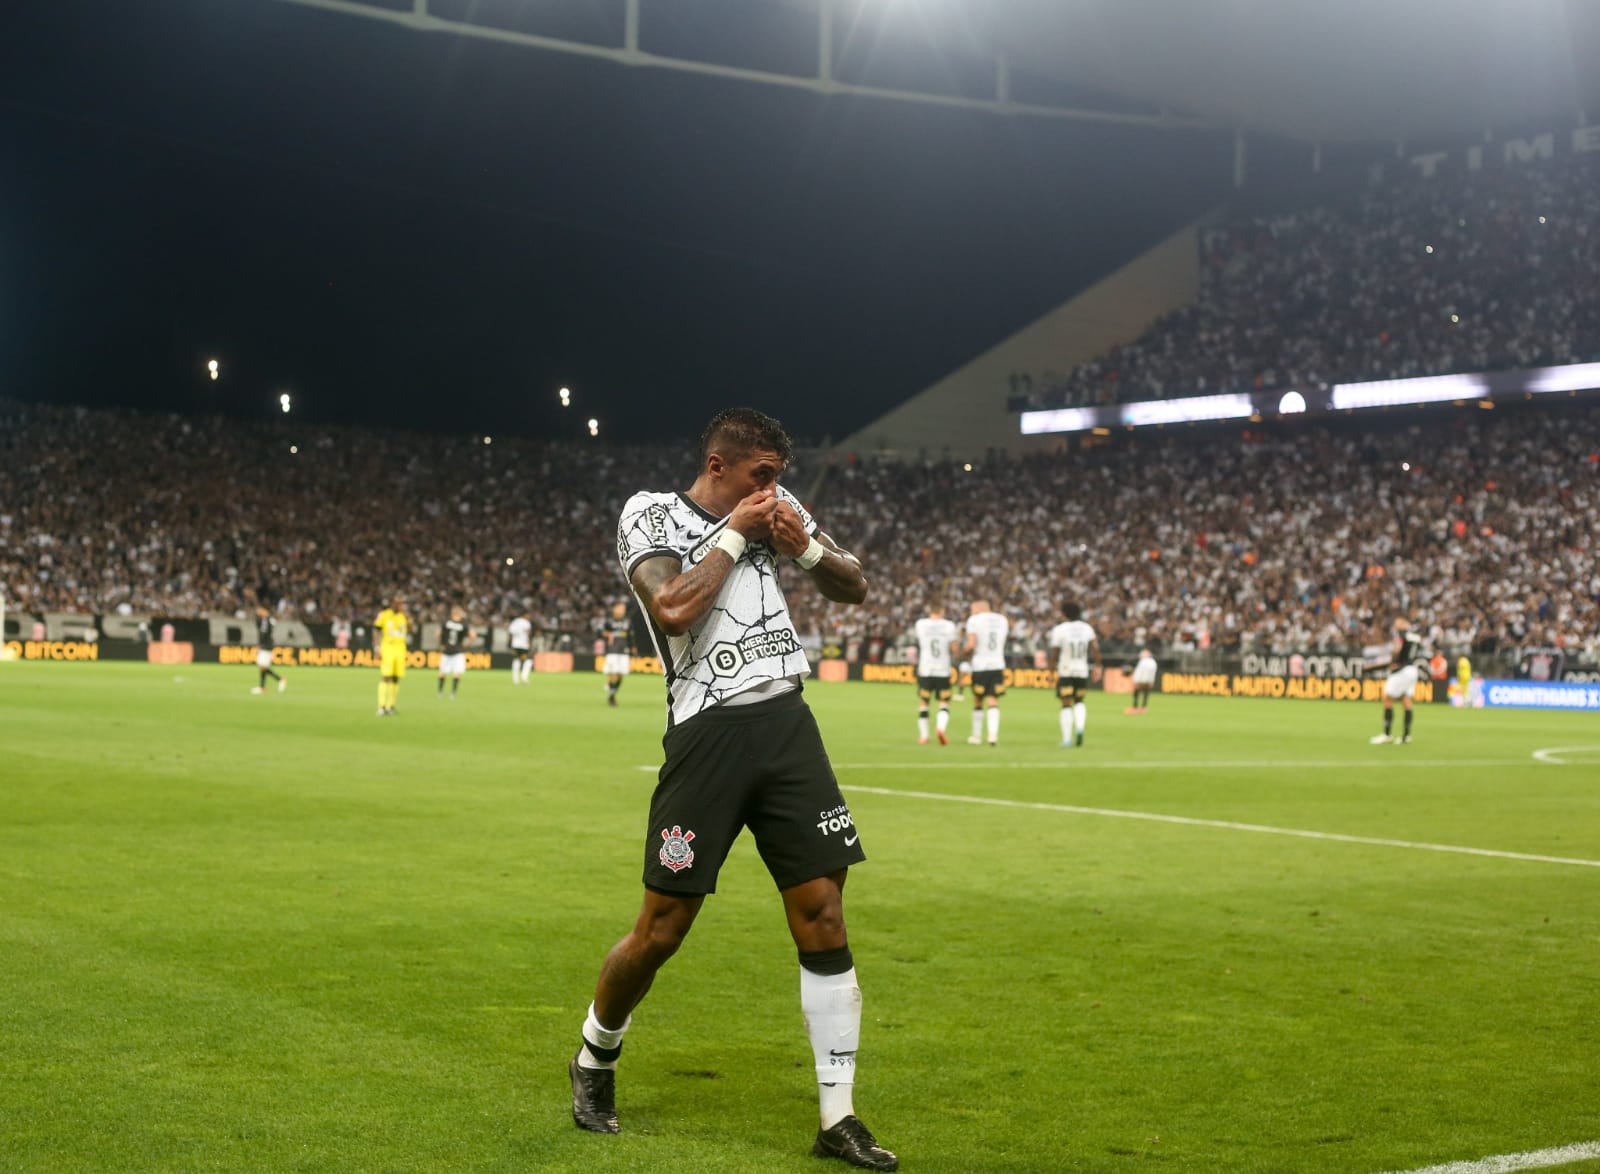 Paulinho comemorando gol pelo Corinthians